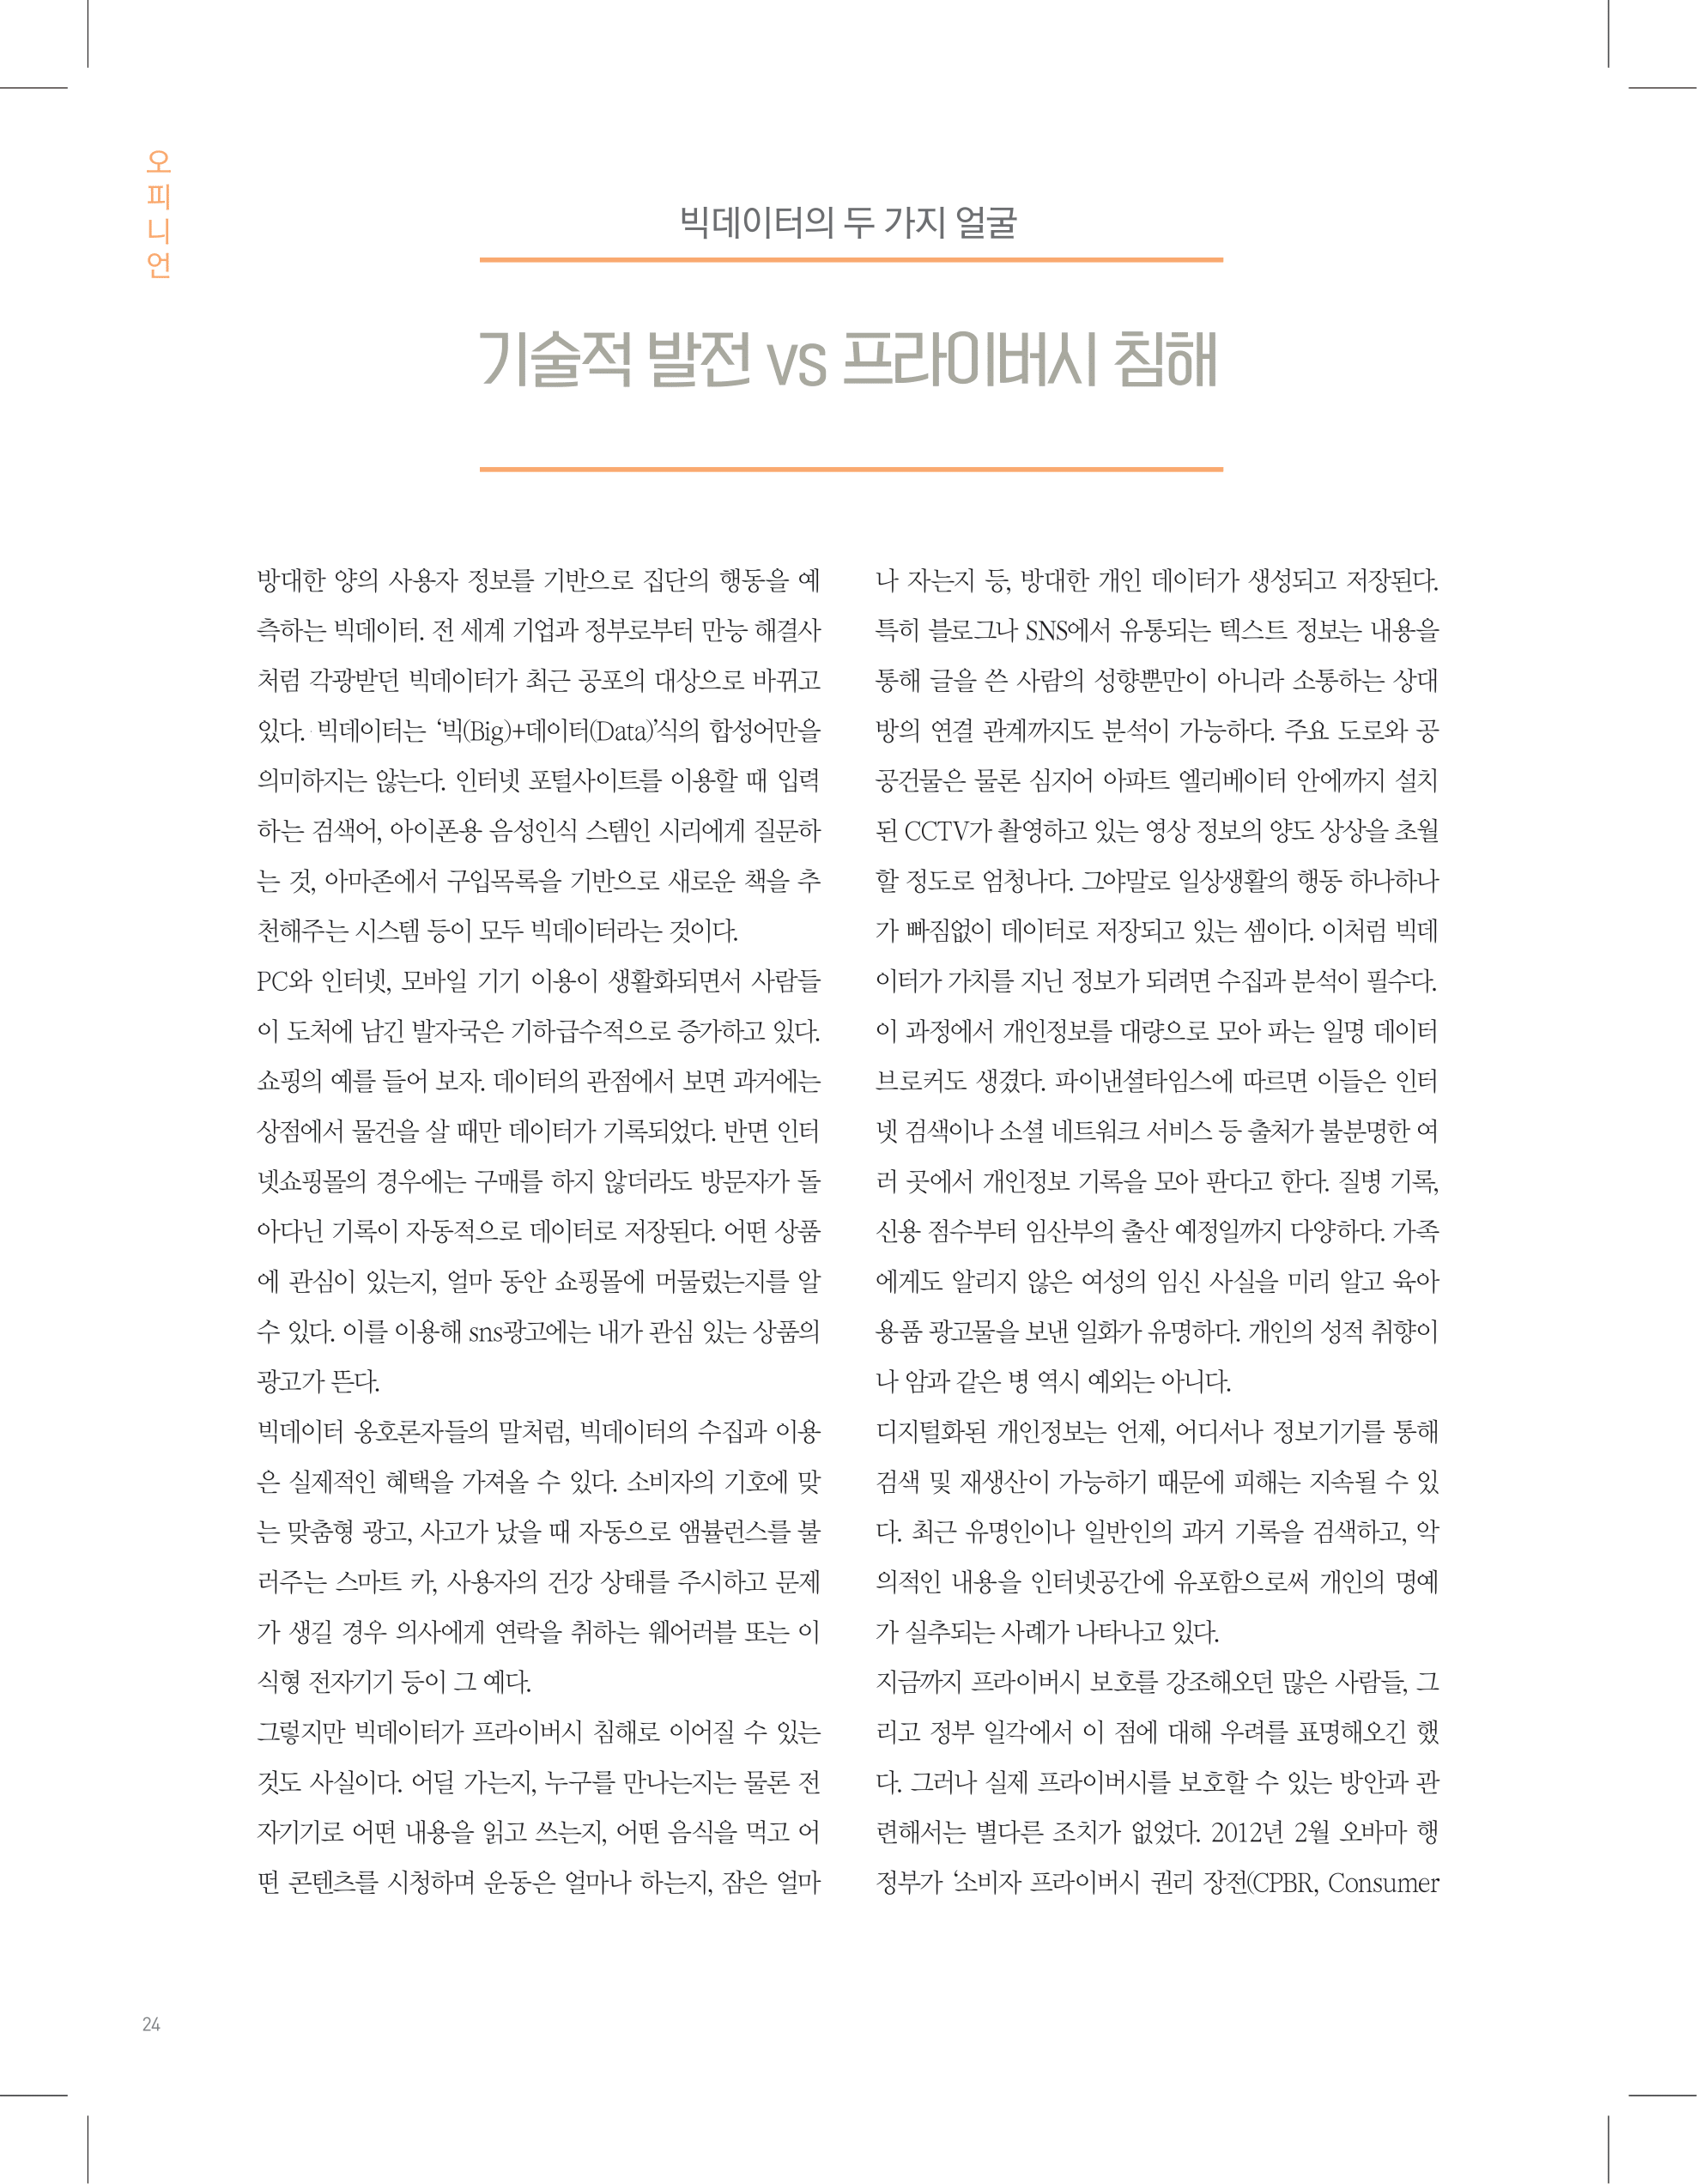 뜻새김 신문 74호 24